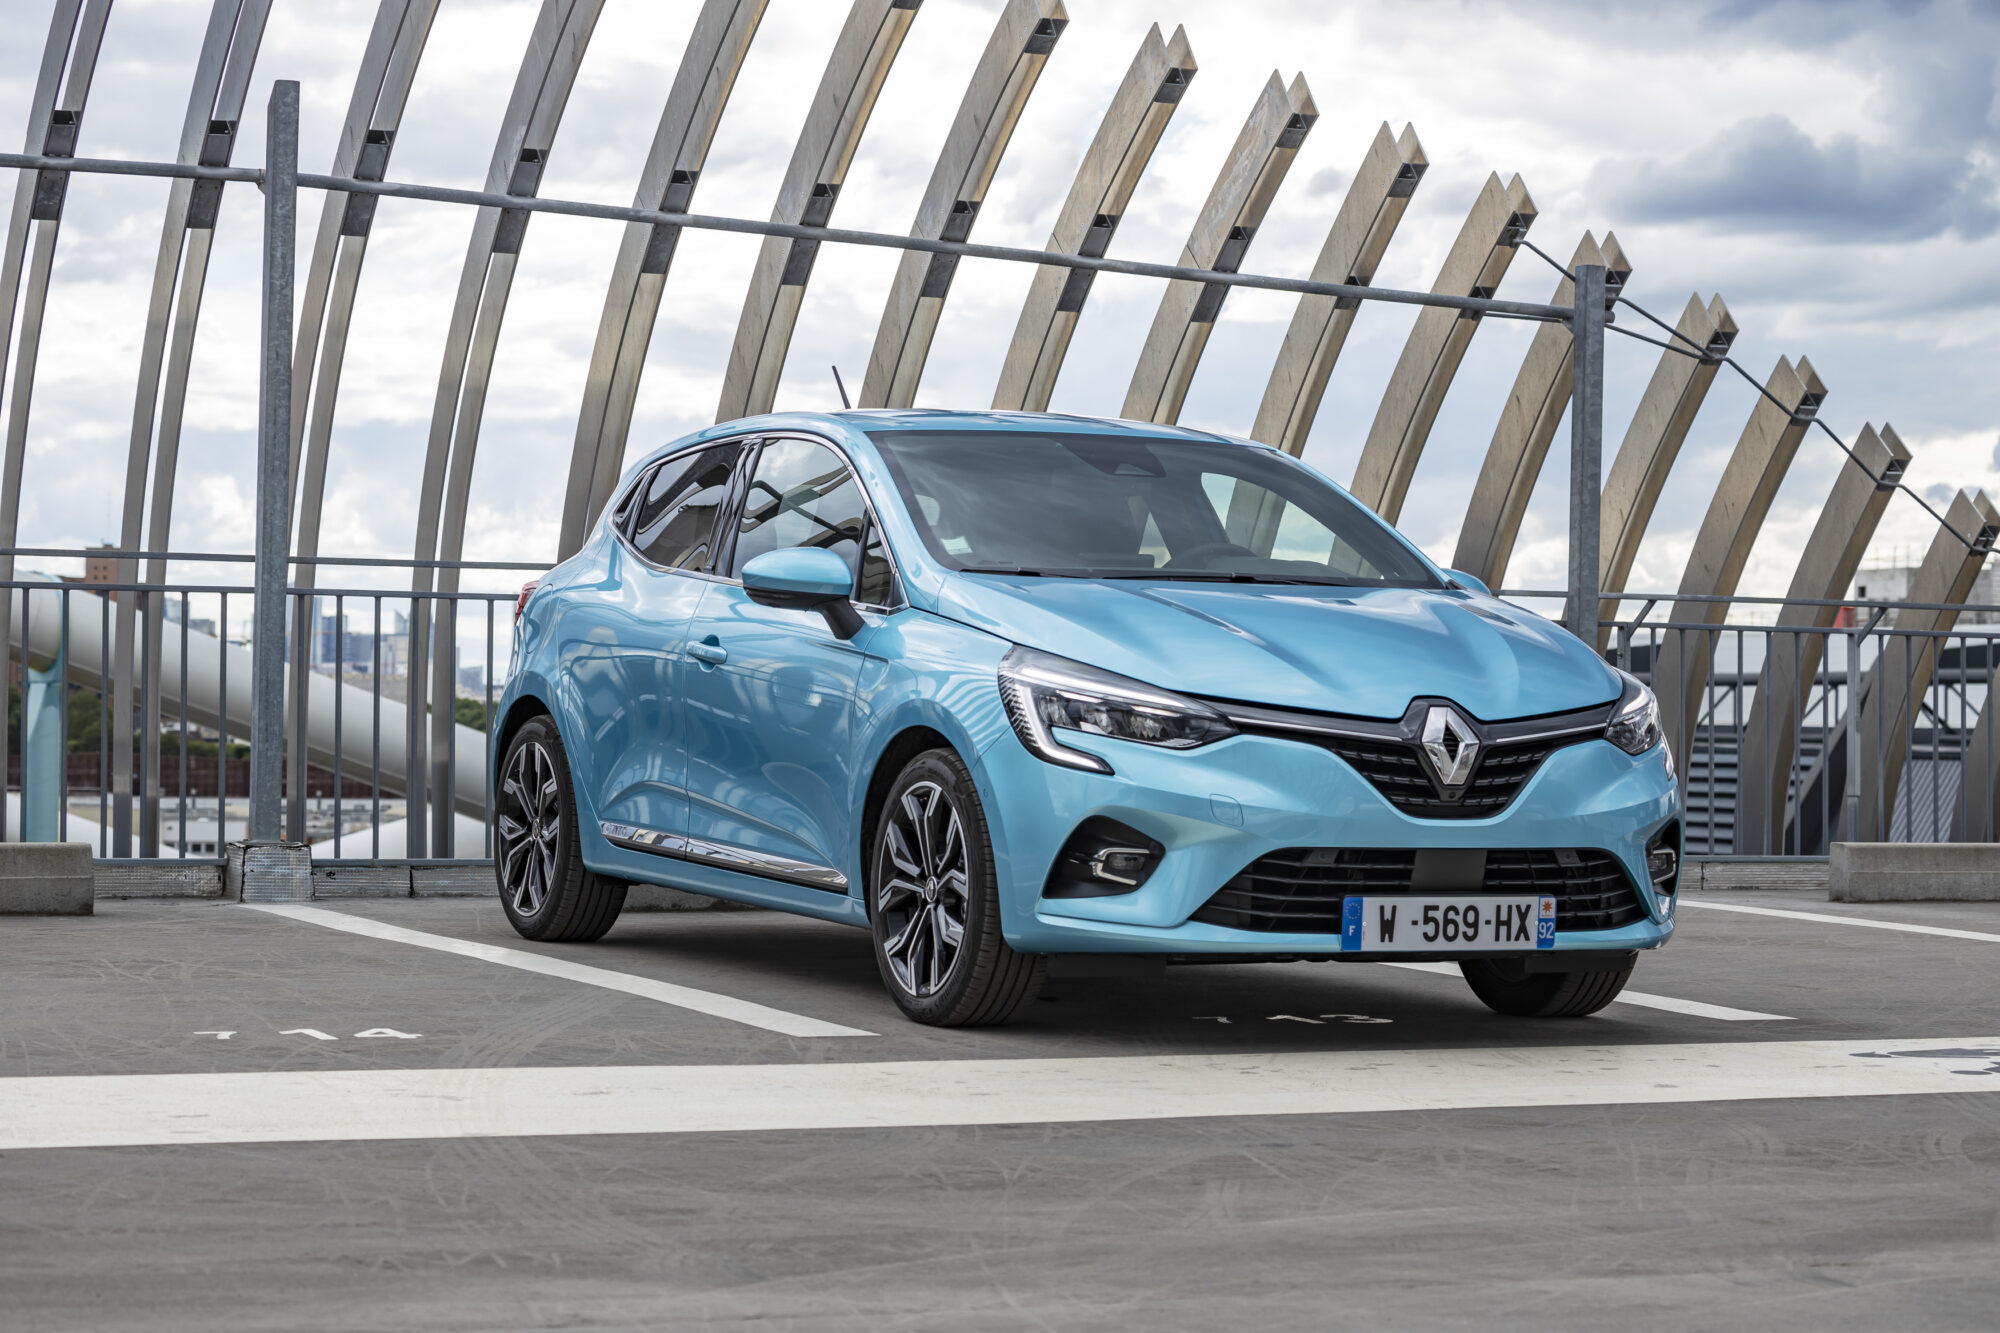 2020 - Essais Presse Renault CLIO E-TECH